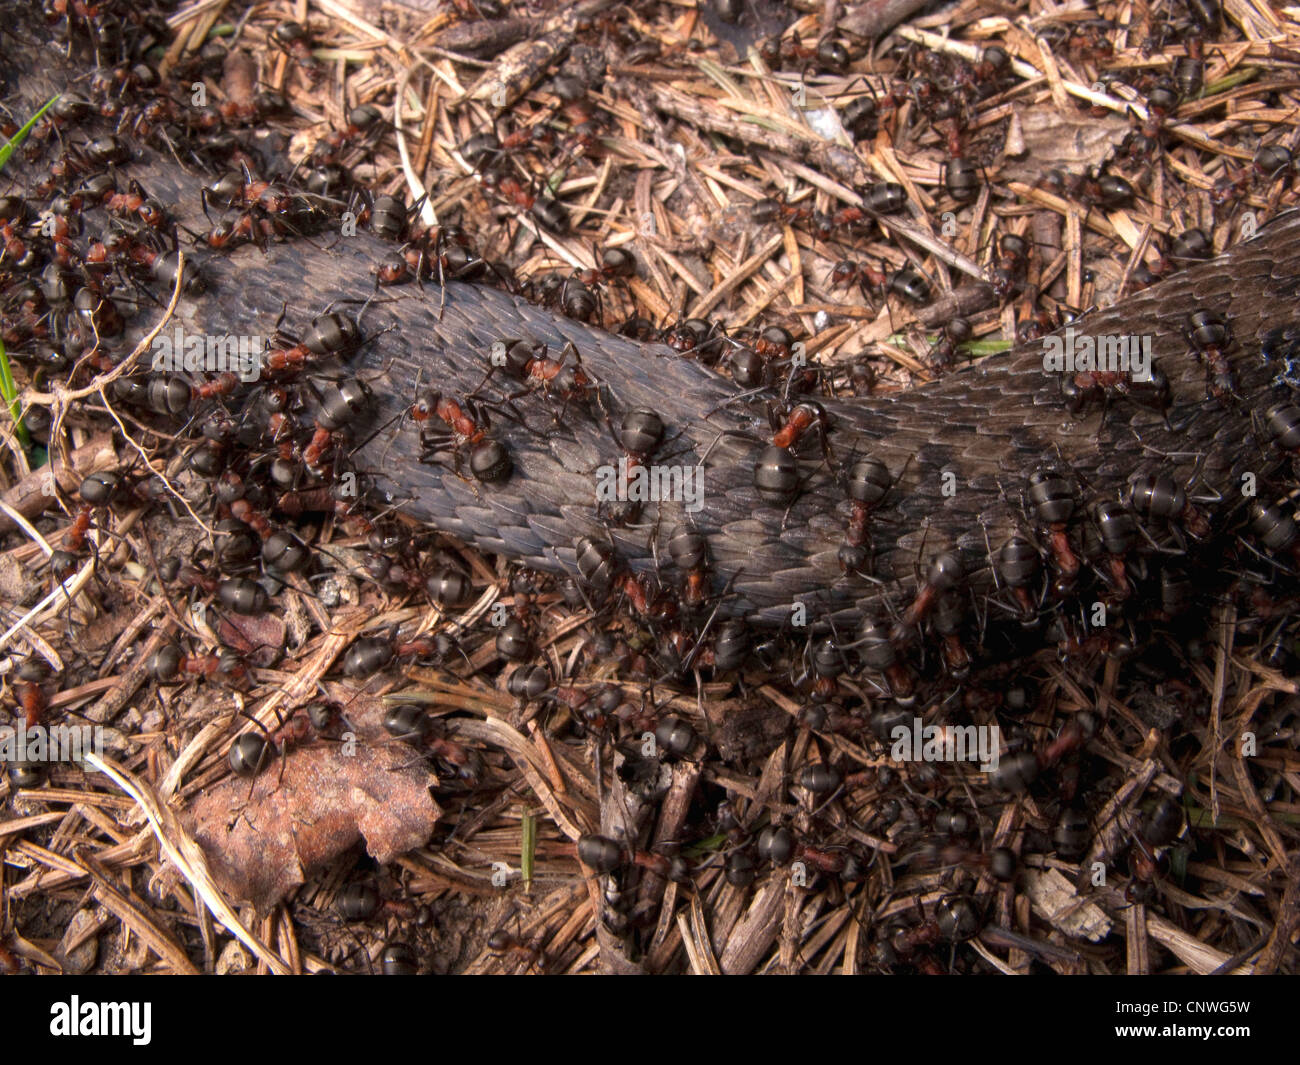 Hormiga de madera (Formica rufa), alimentándose de una serpiente muerta, Noruega Foto de stock